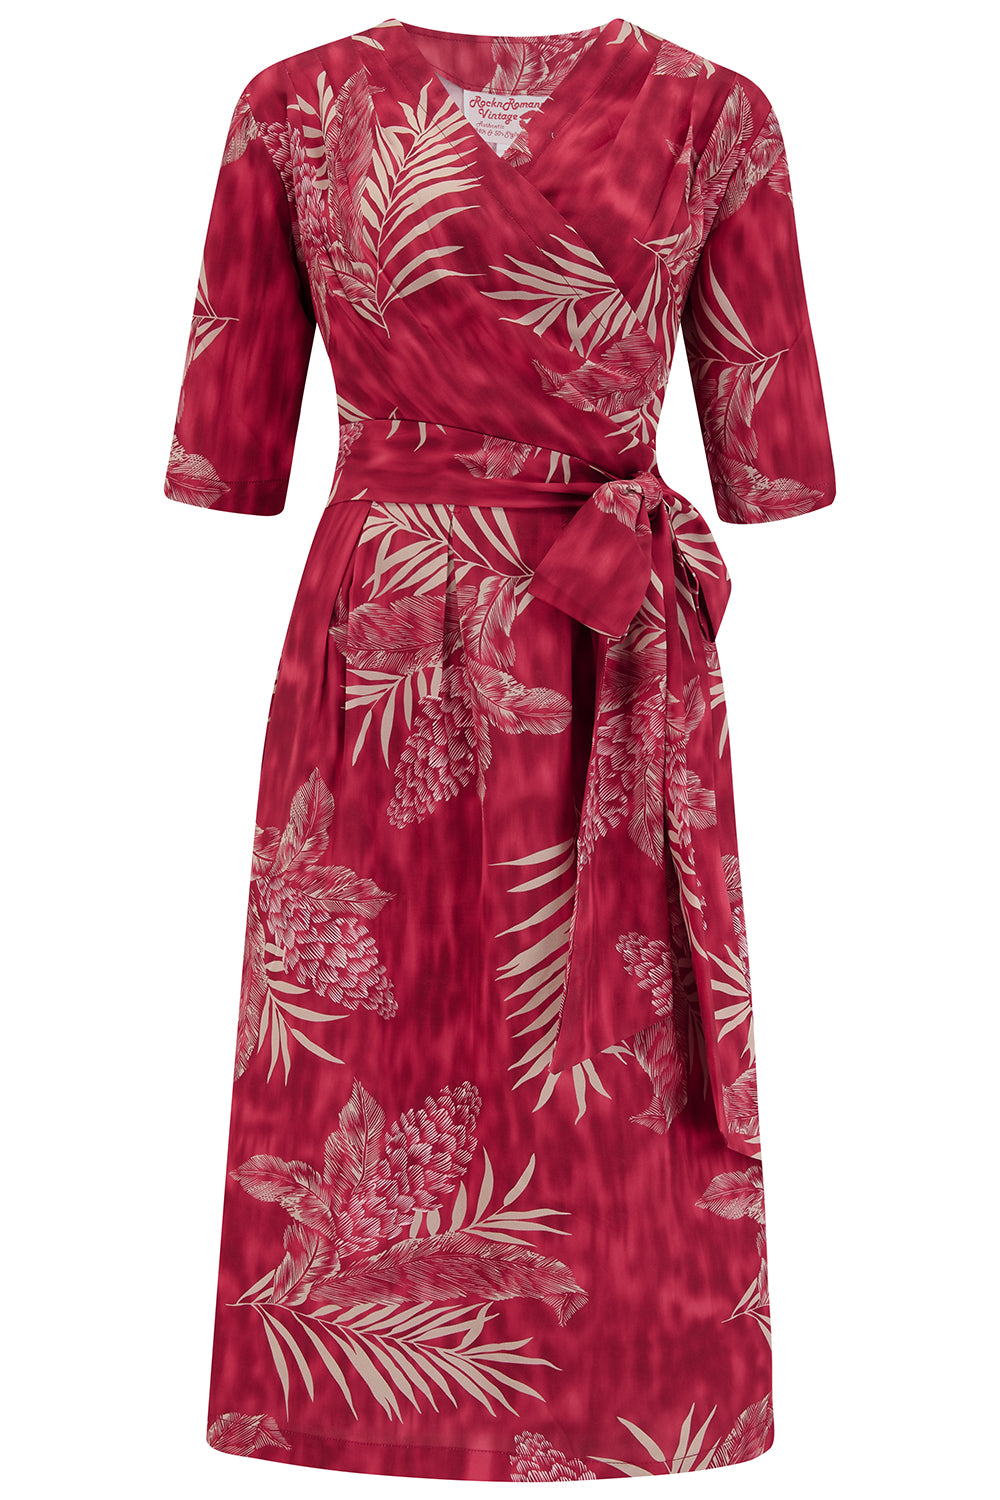 Das „Vivien“ Wickelkleid in Ruby Palm, echter Stil der 1940er bis frühen 1950er Jahre